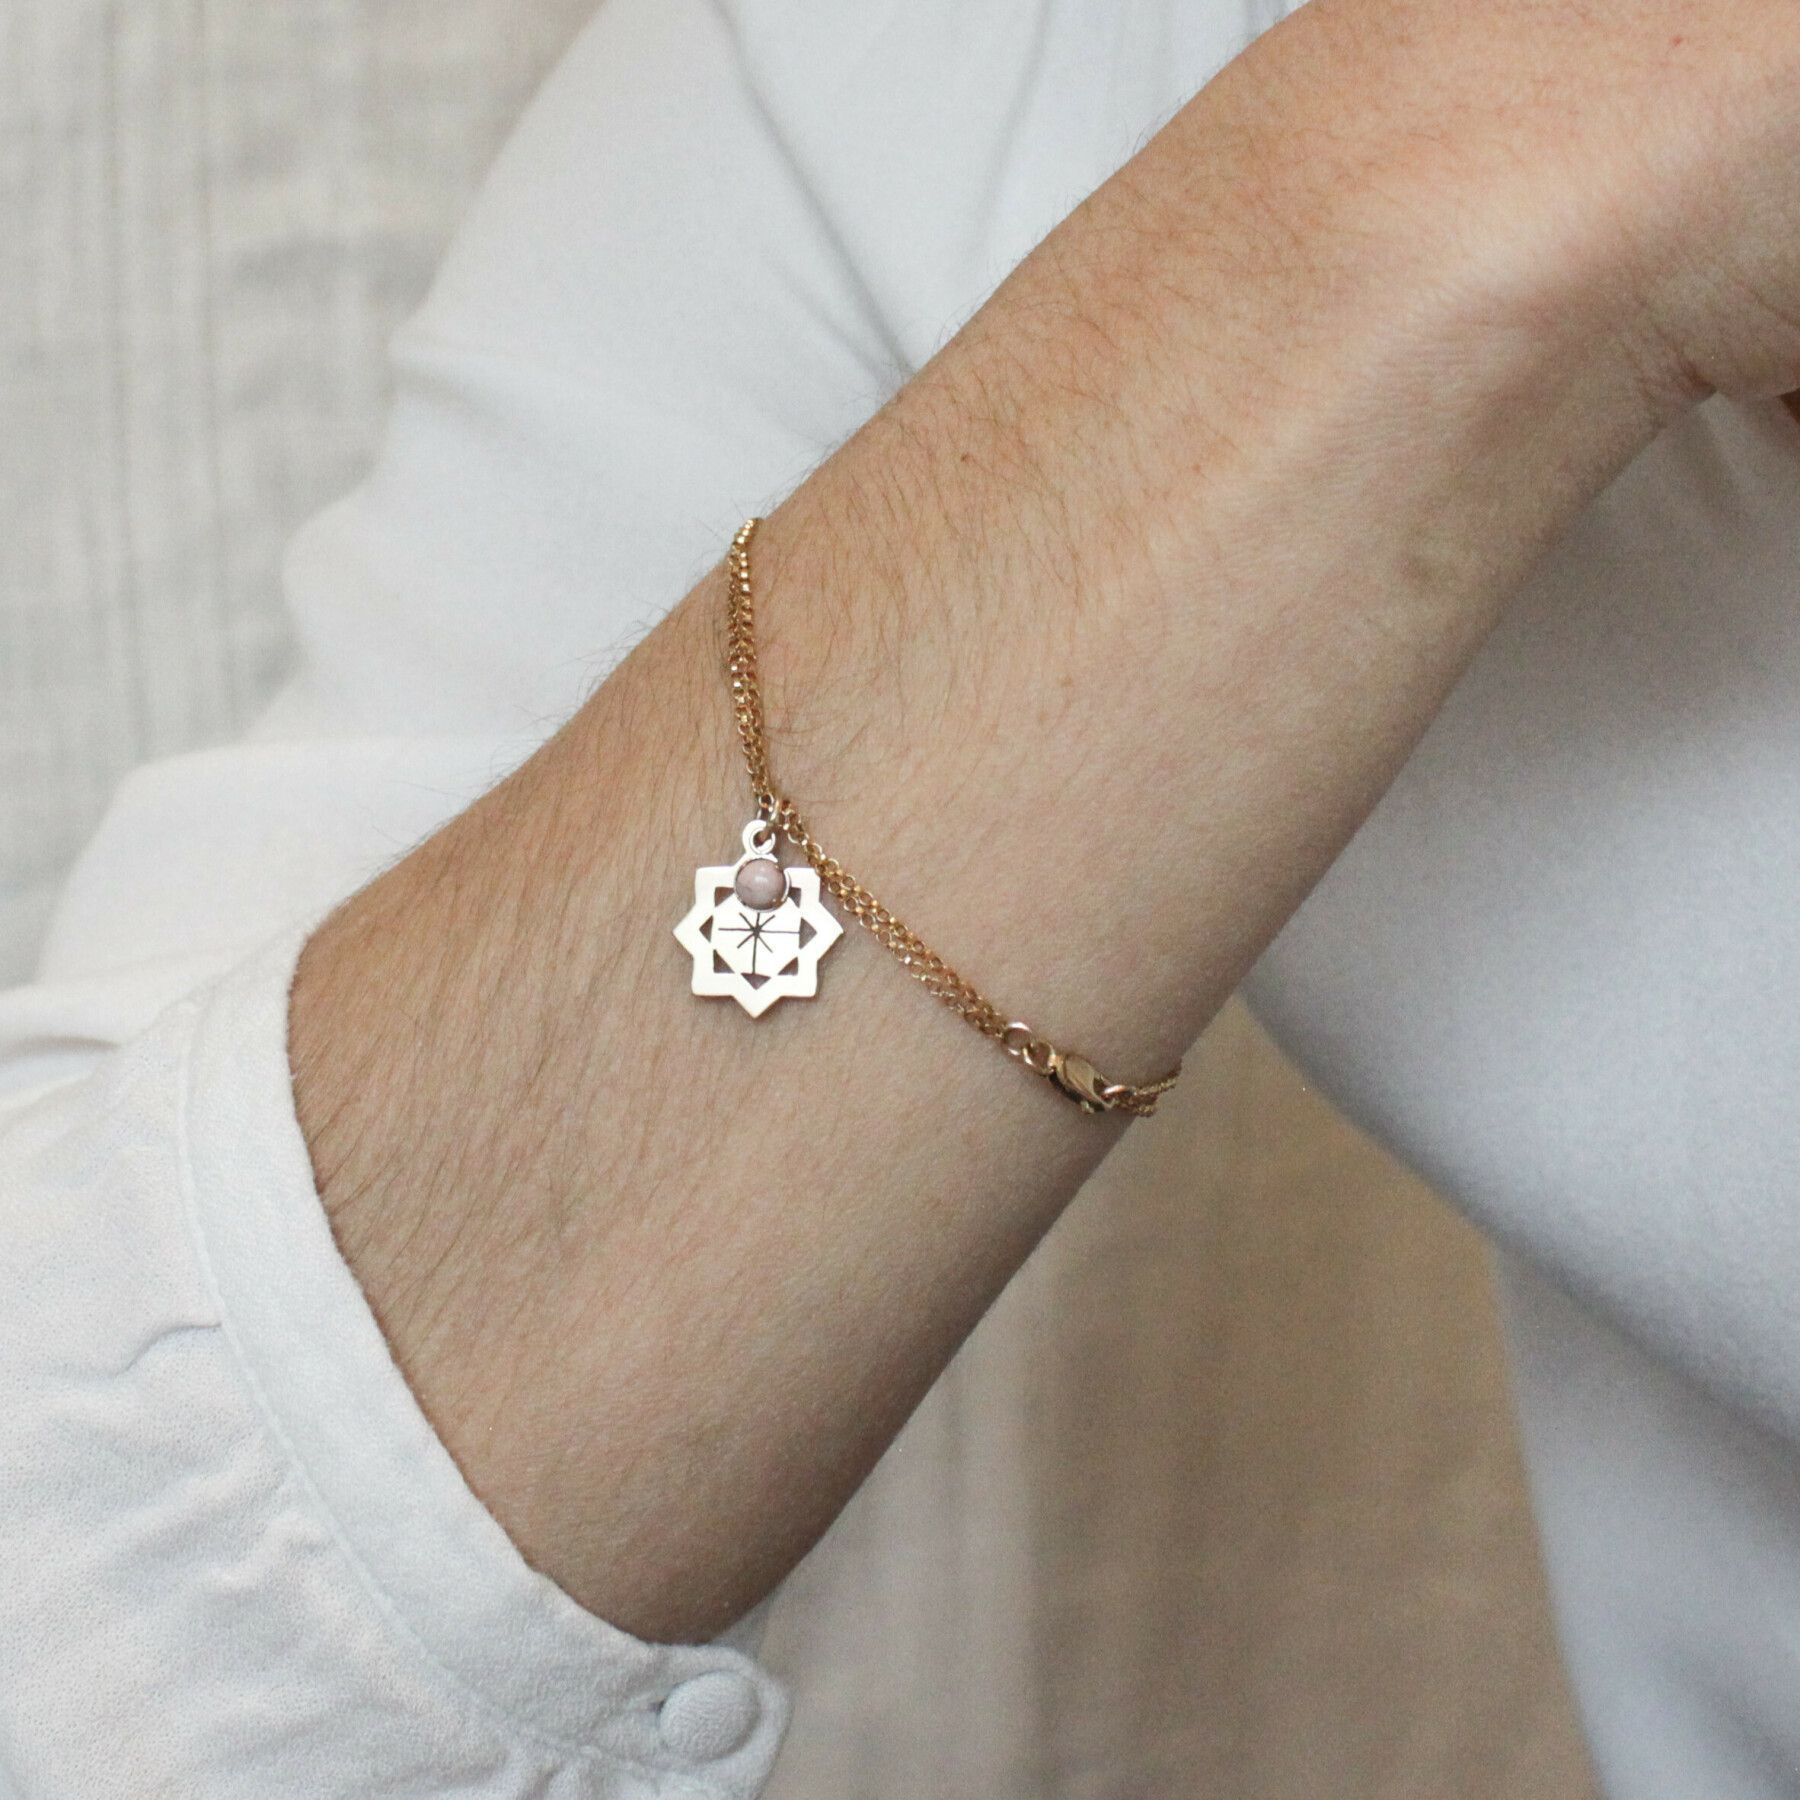 10 chaleur Fleur Love Charms pour bracelet collier pendentif métal argent antique 